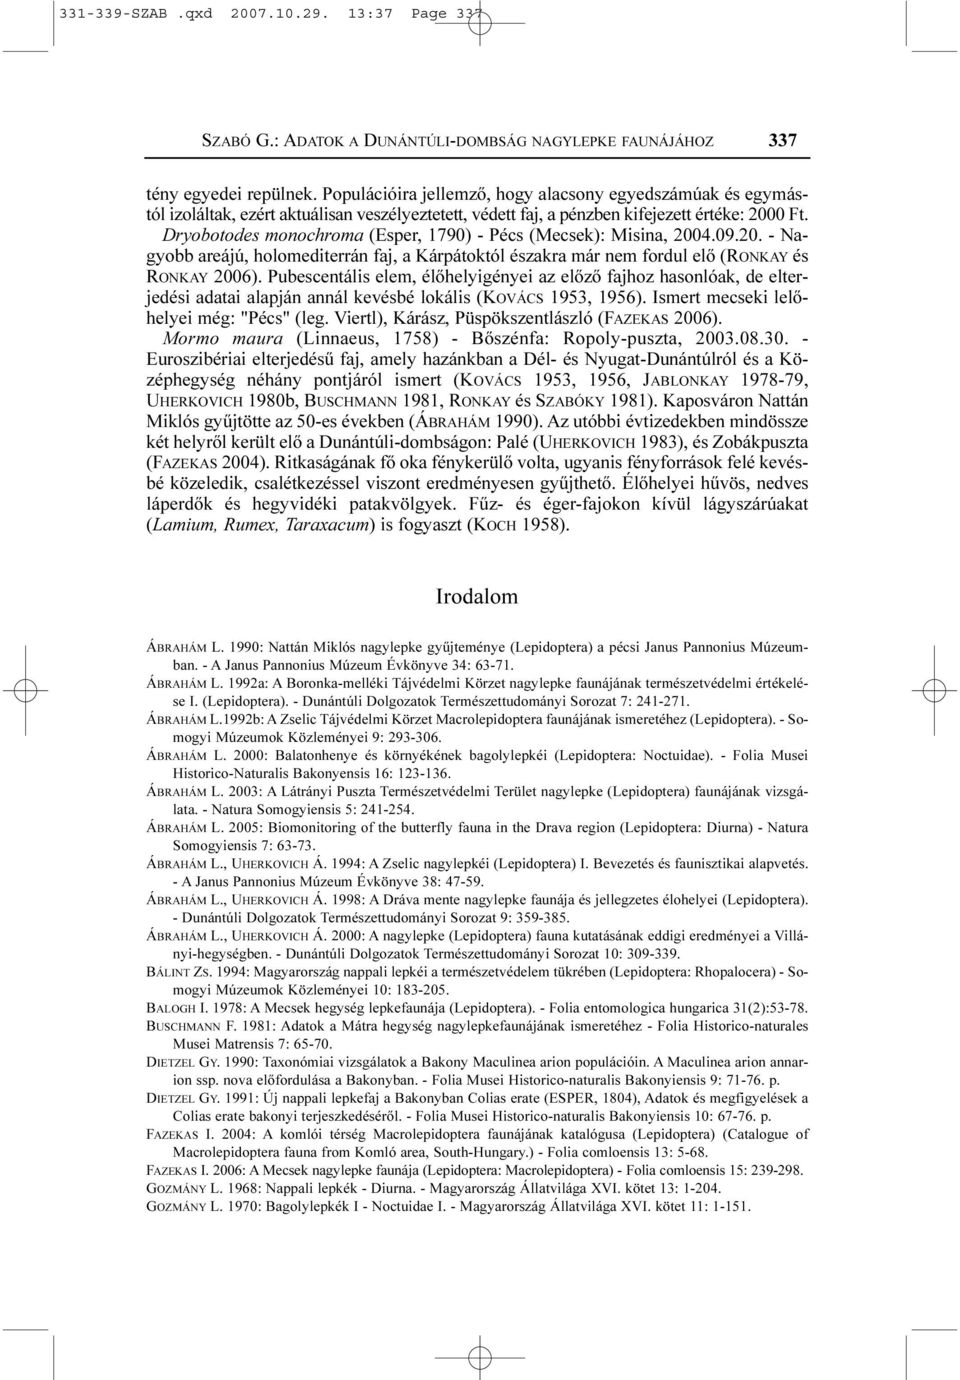 Dryobotodes monochroma (Esper, 1790) - Pécs (Mecsek): Misina, 2004.09.20. - Nagyobb areájú, holomediterrán faj, a Kárpátoktól északra már nem fordul elõ (RONKAY és RONKAY 2006).